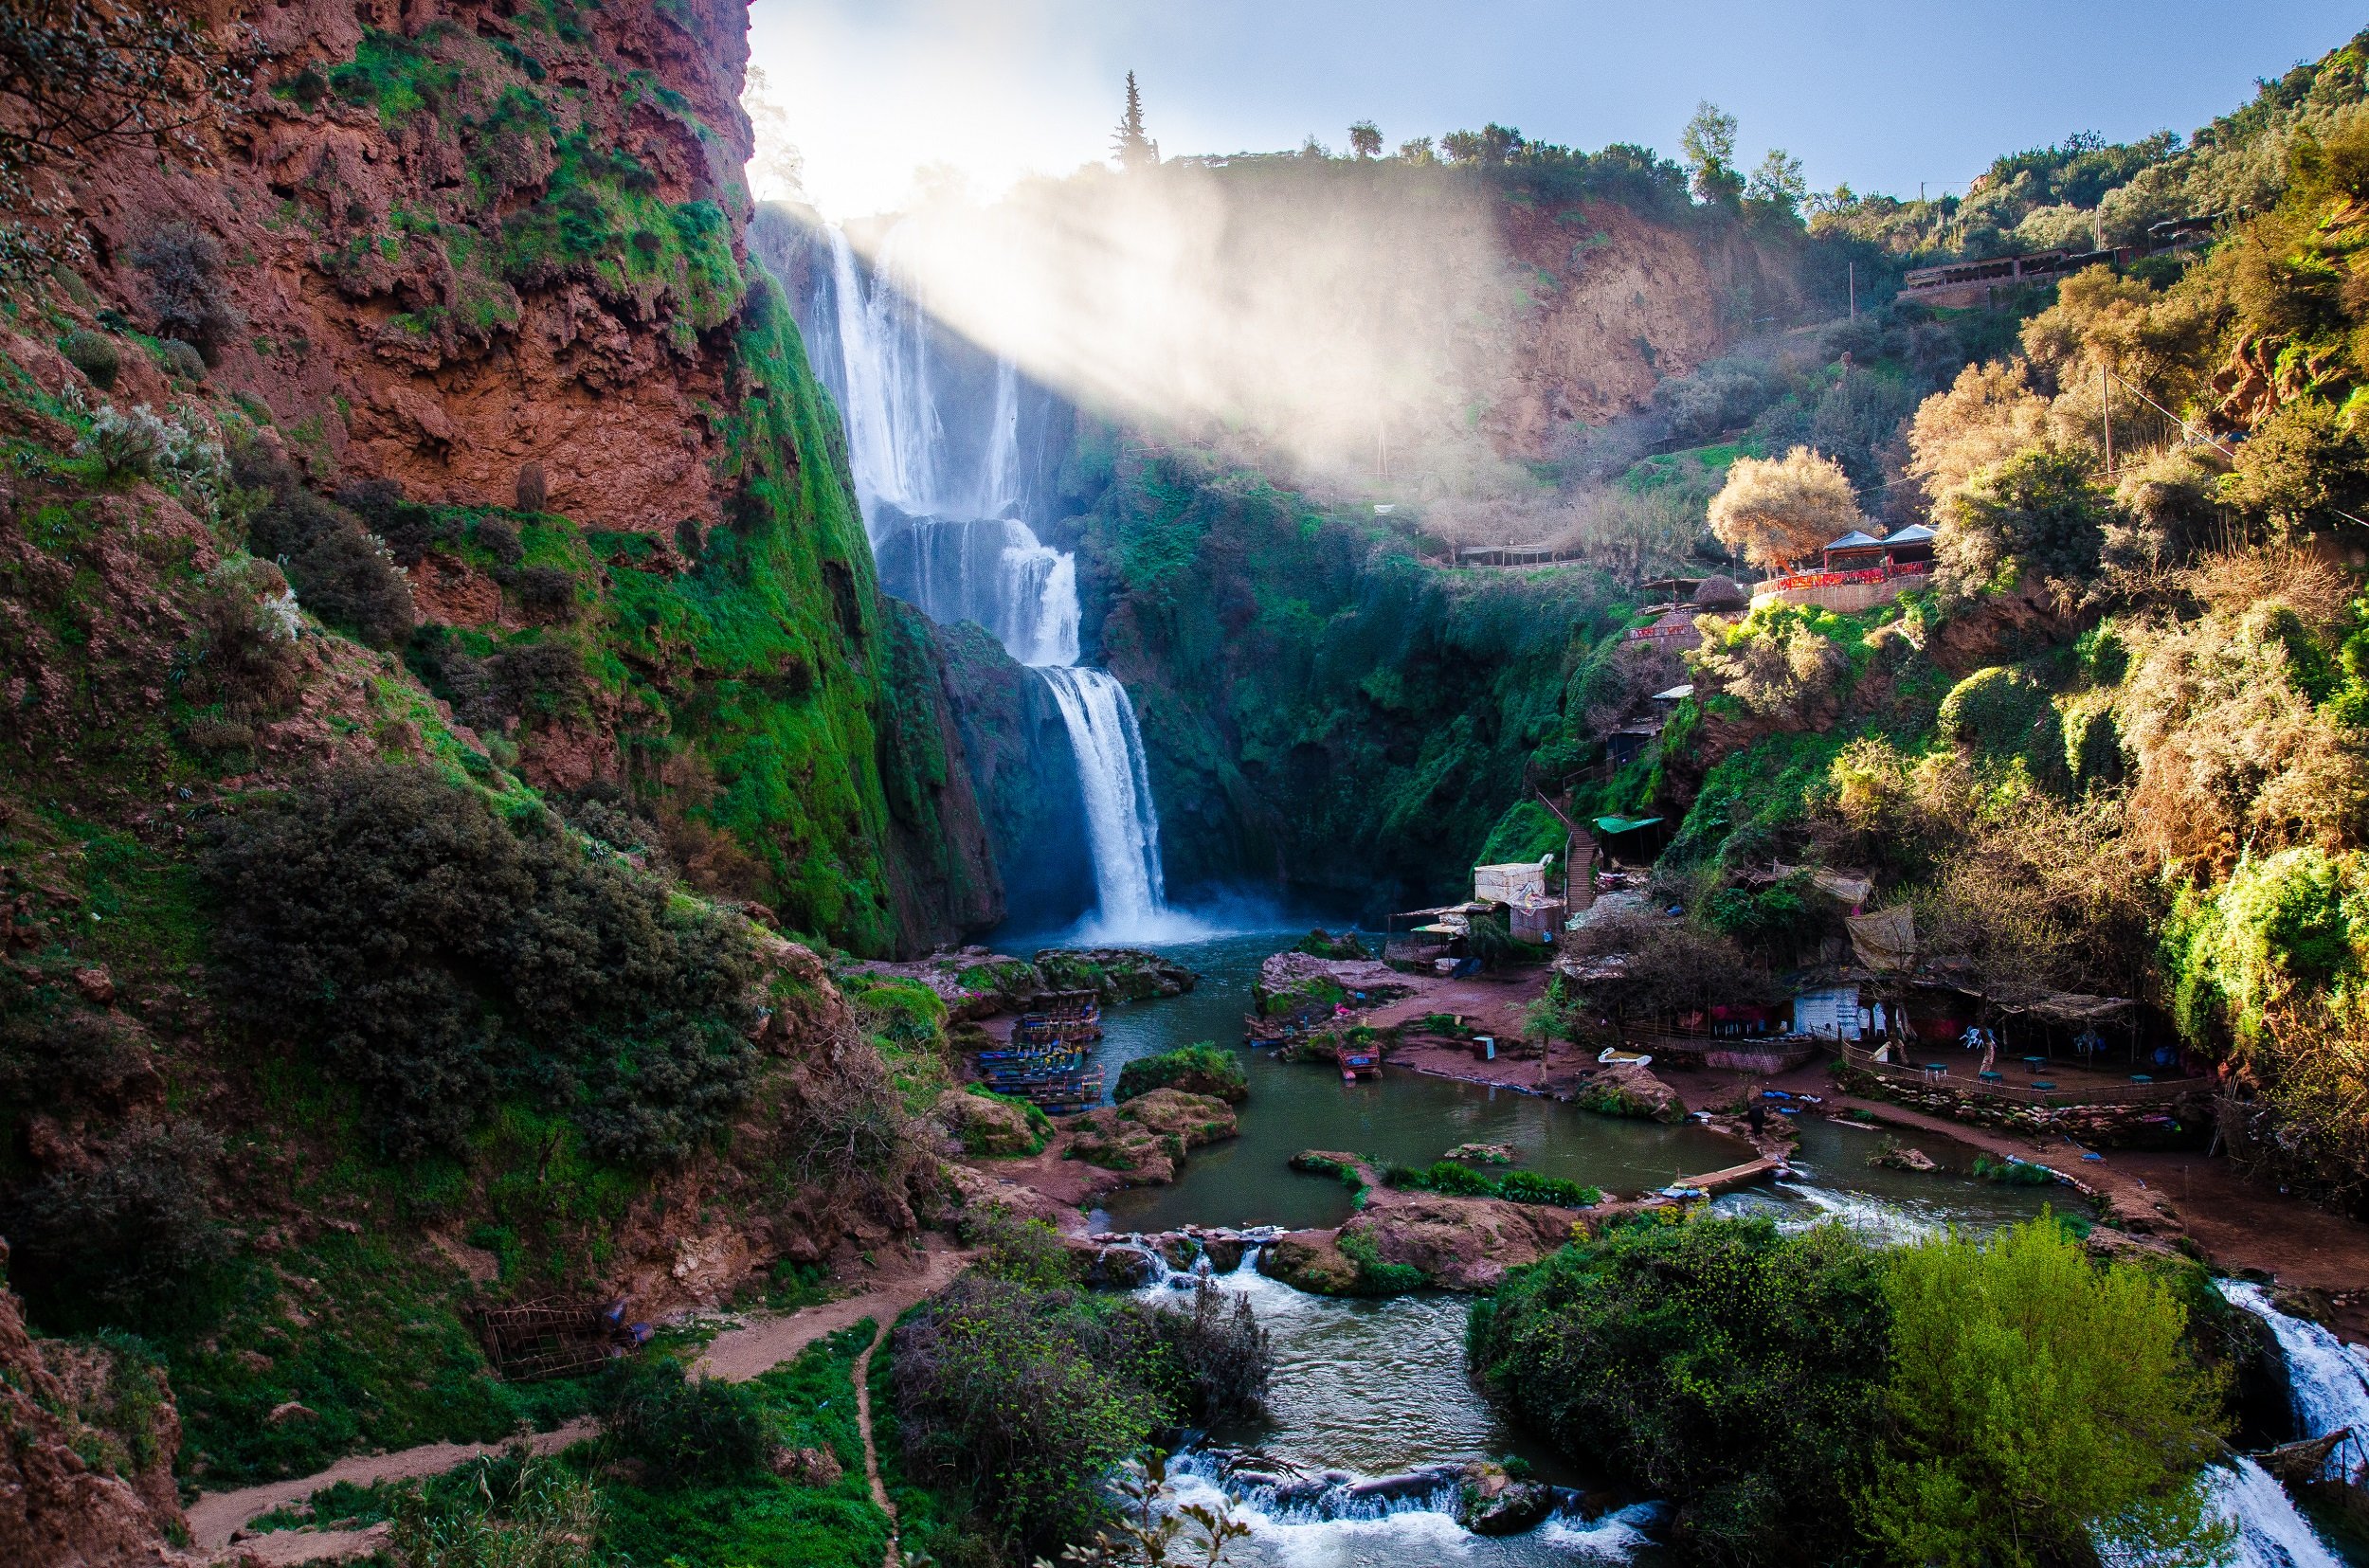 marrakech waterfall tour